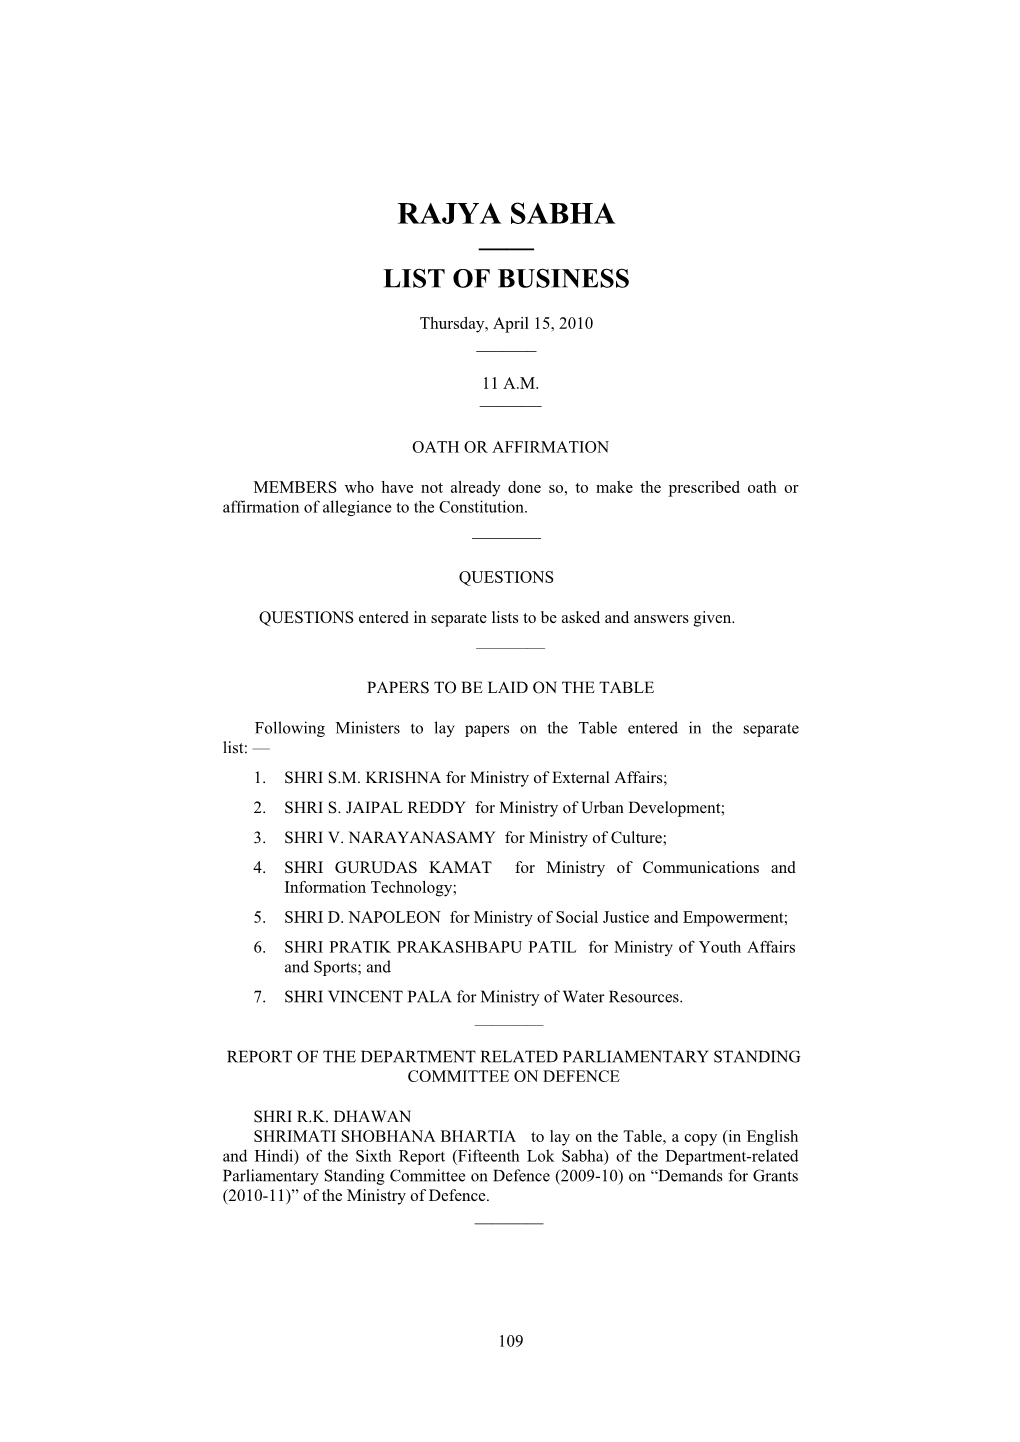 Rajya Sabha —— List of Business